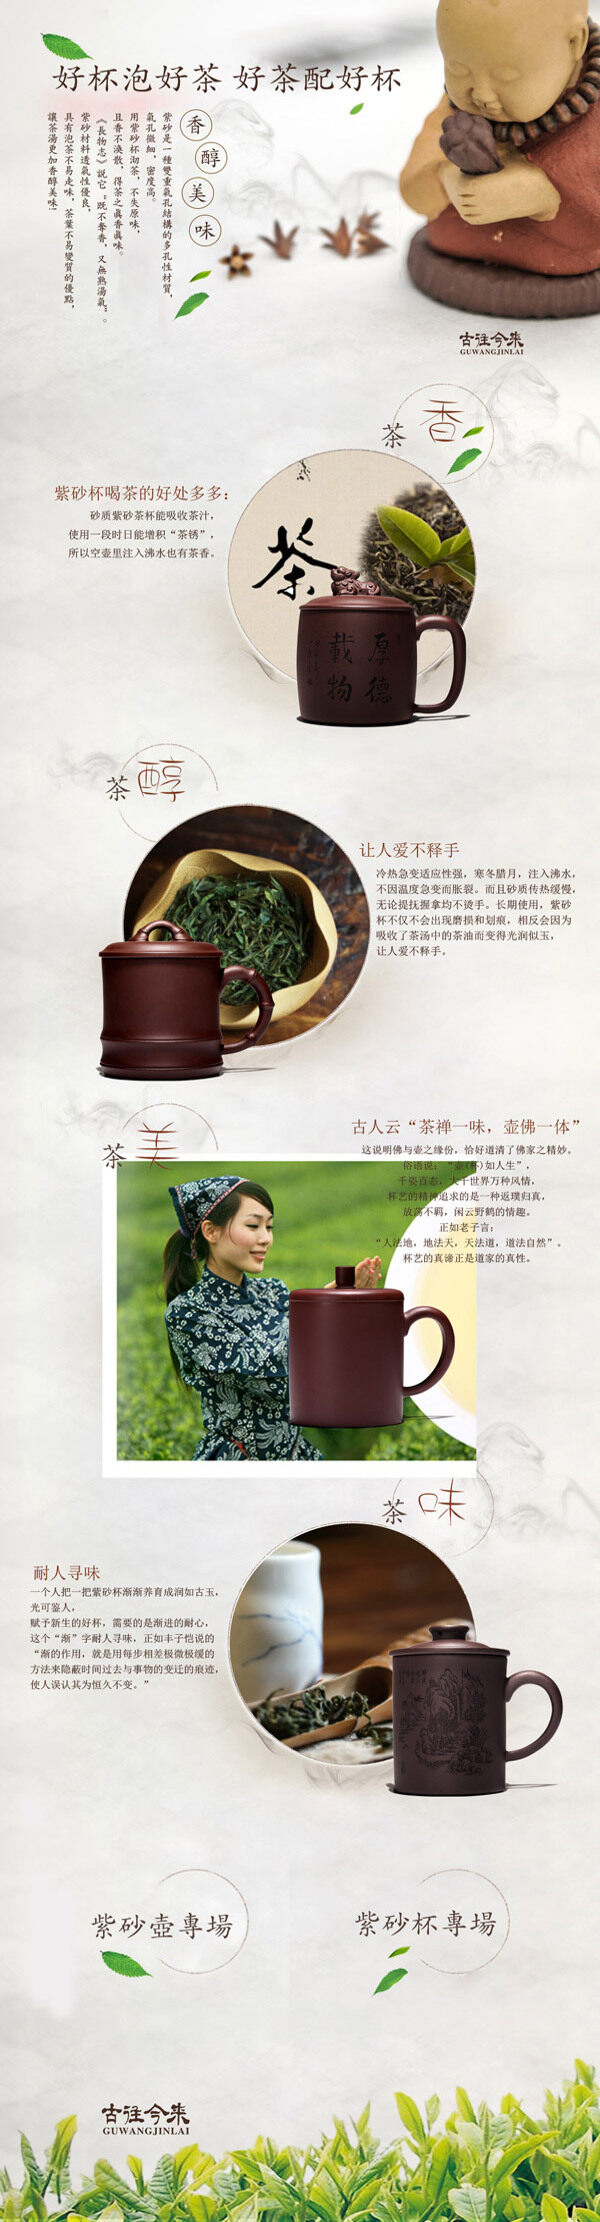 淘宝茶文化首页